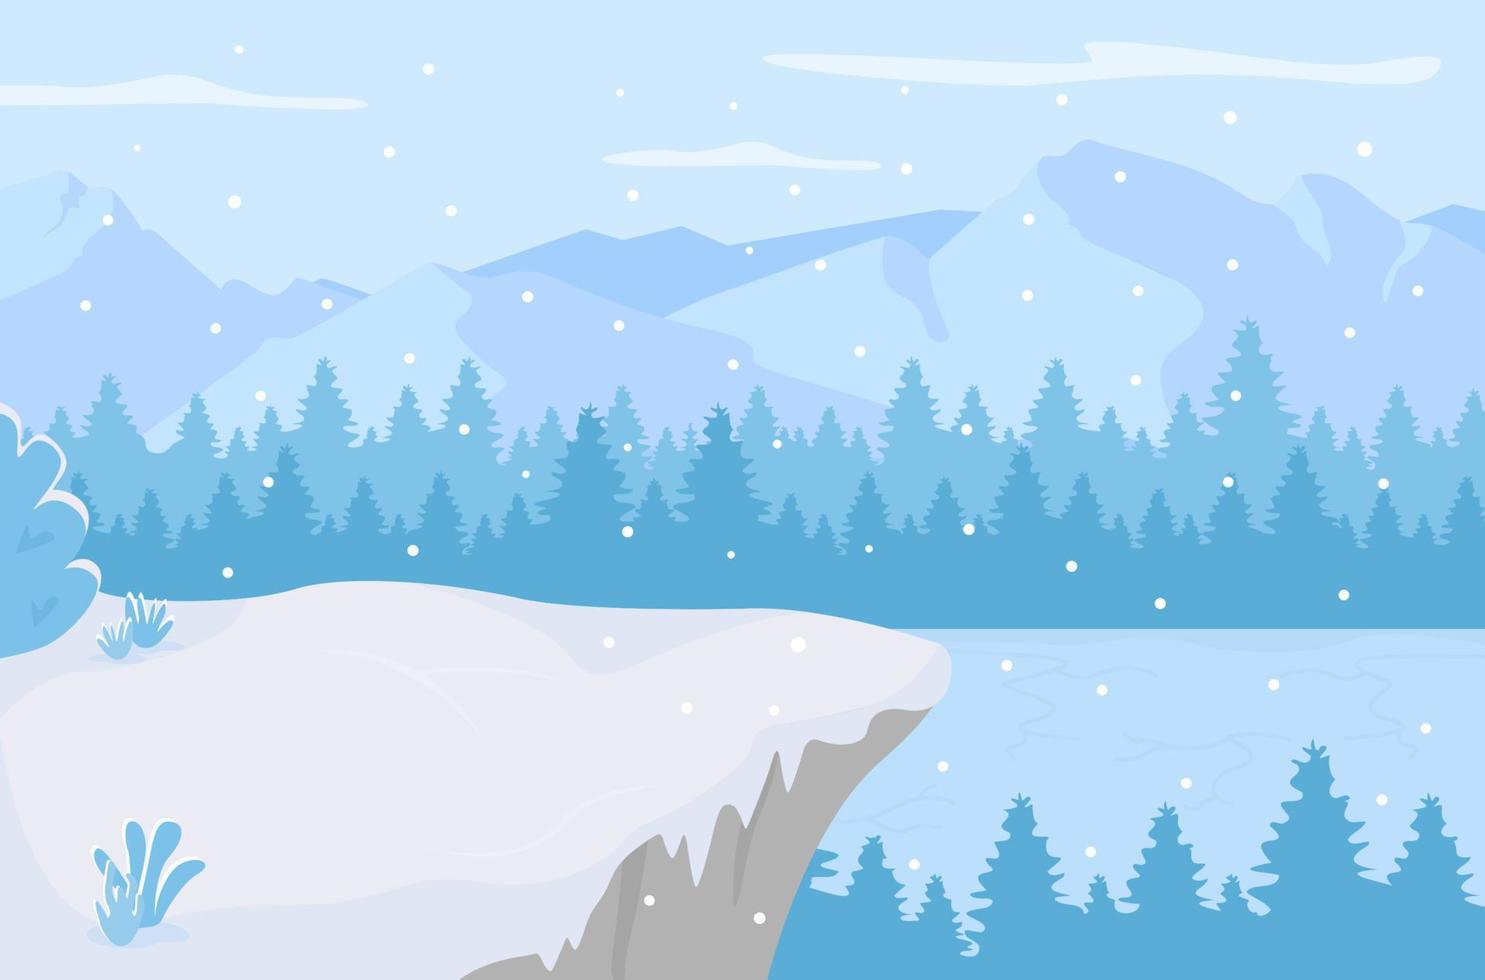 dag op bevroren meer egale kleur vectorillustratie. sneeuwvlokken die op heuvels in bos vallen. winter besneeuwde 2d cartoon landschap met winterse bossen in de buurt van bergtoppen op achtergrond vector